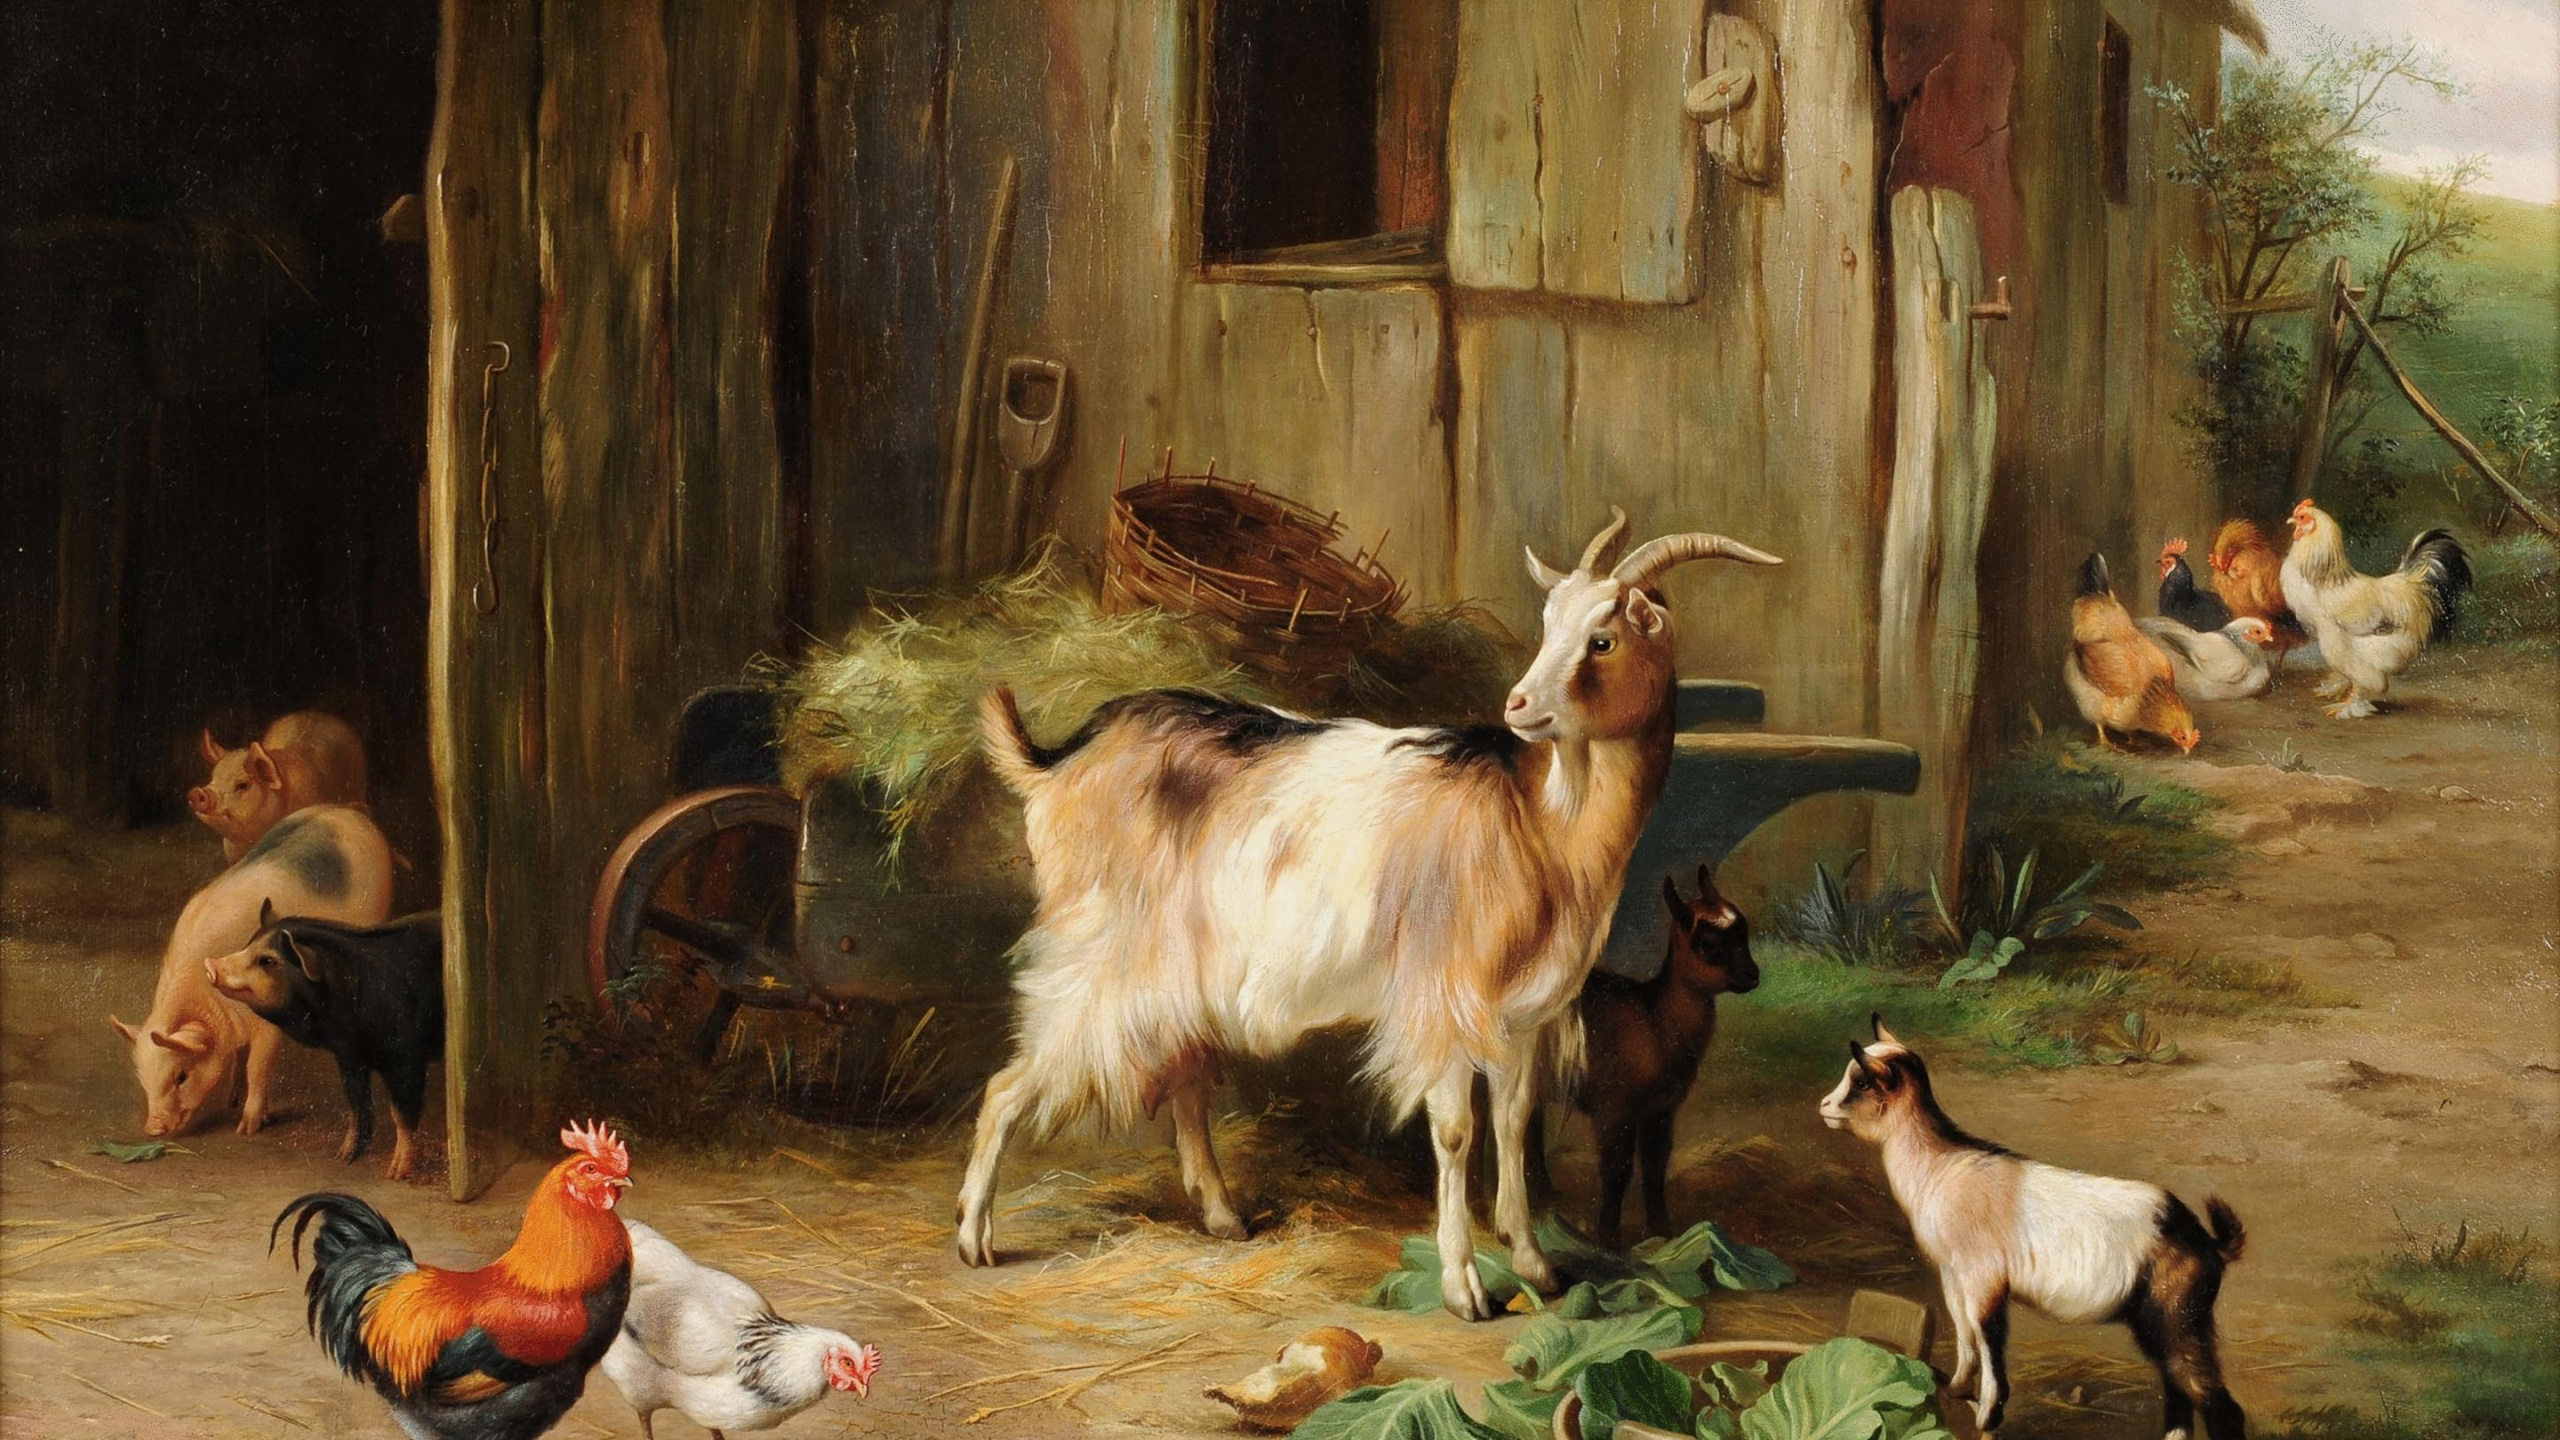 Chèvres Blanches et Brunes Sur Cage en Bois Brune. Wallpaper in 2560x1440 Resolution